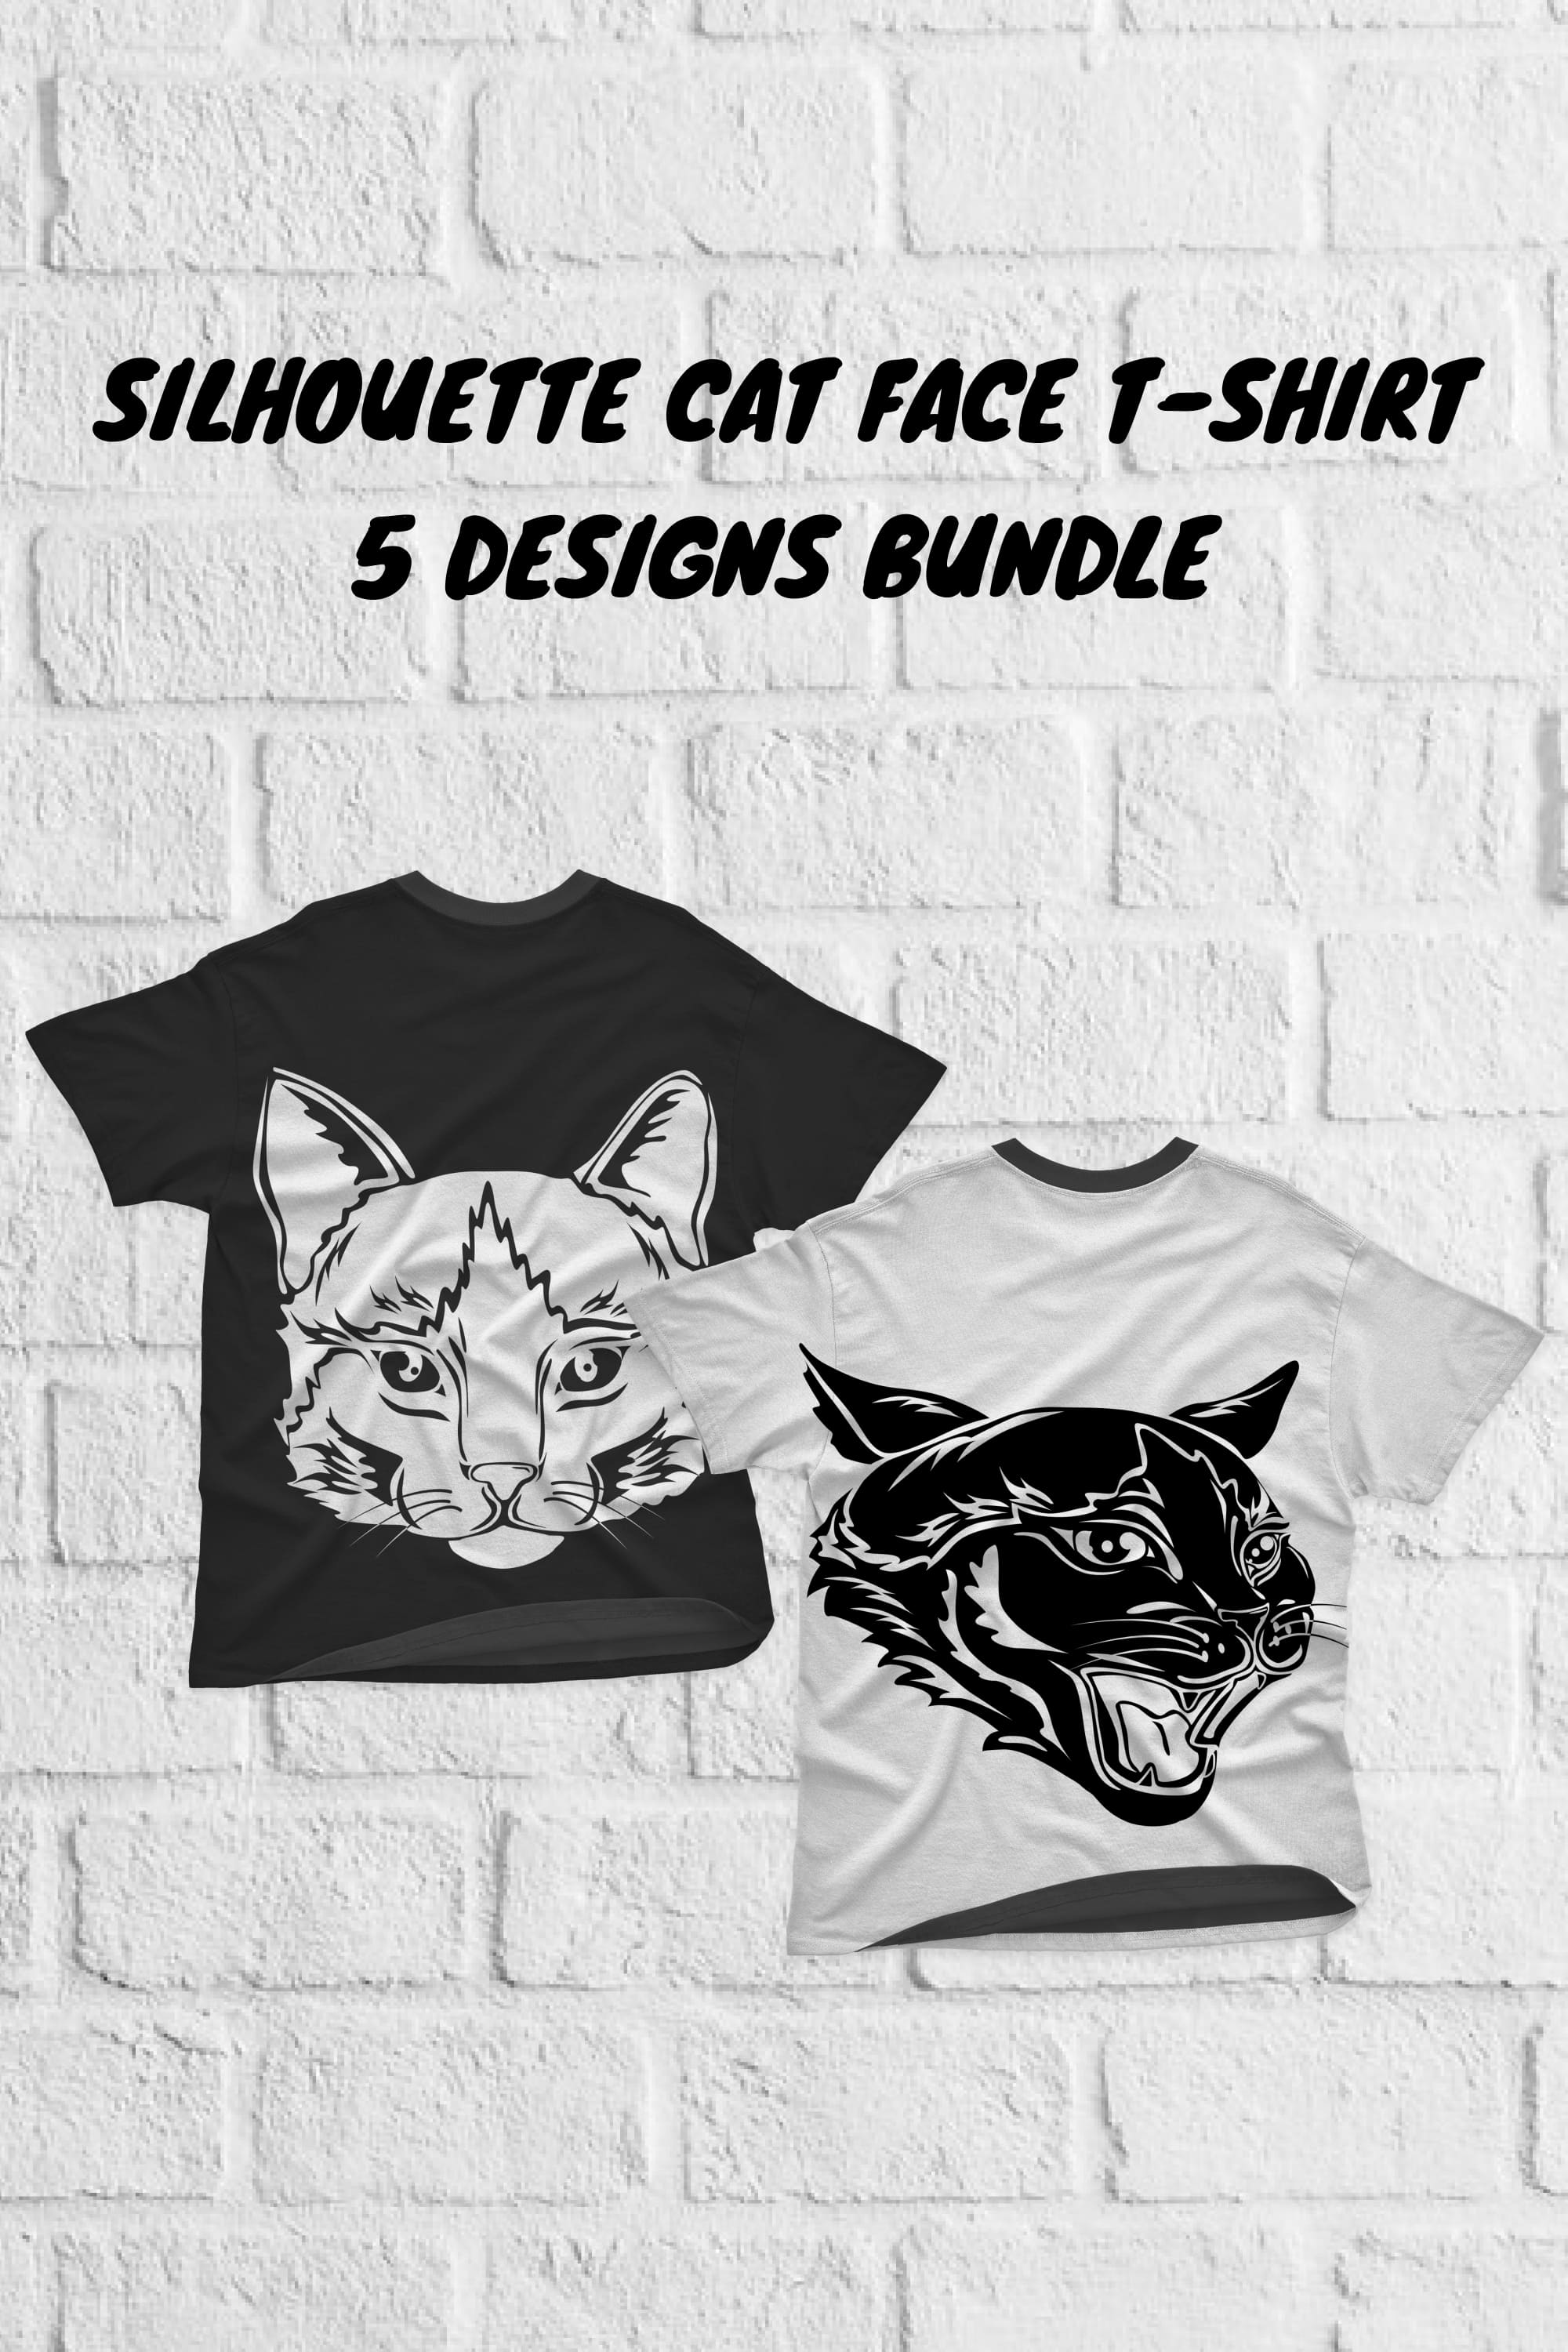 Silhouette Cat Face T-shirt Designs Bundle - Pinterest.